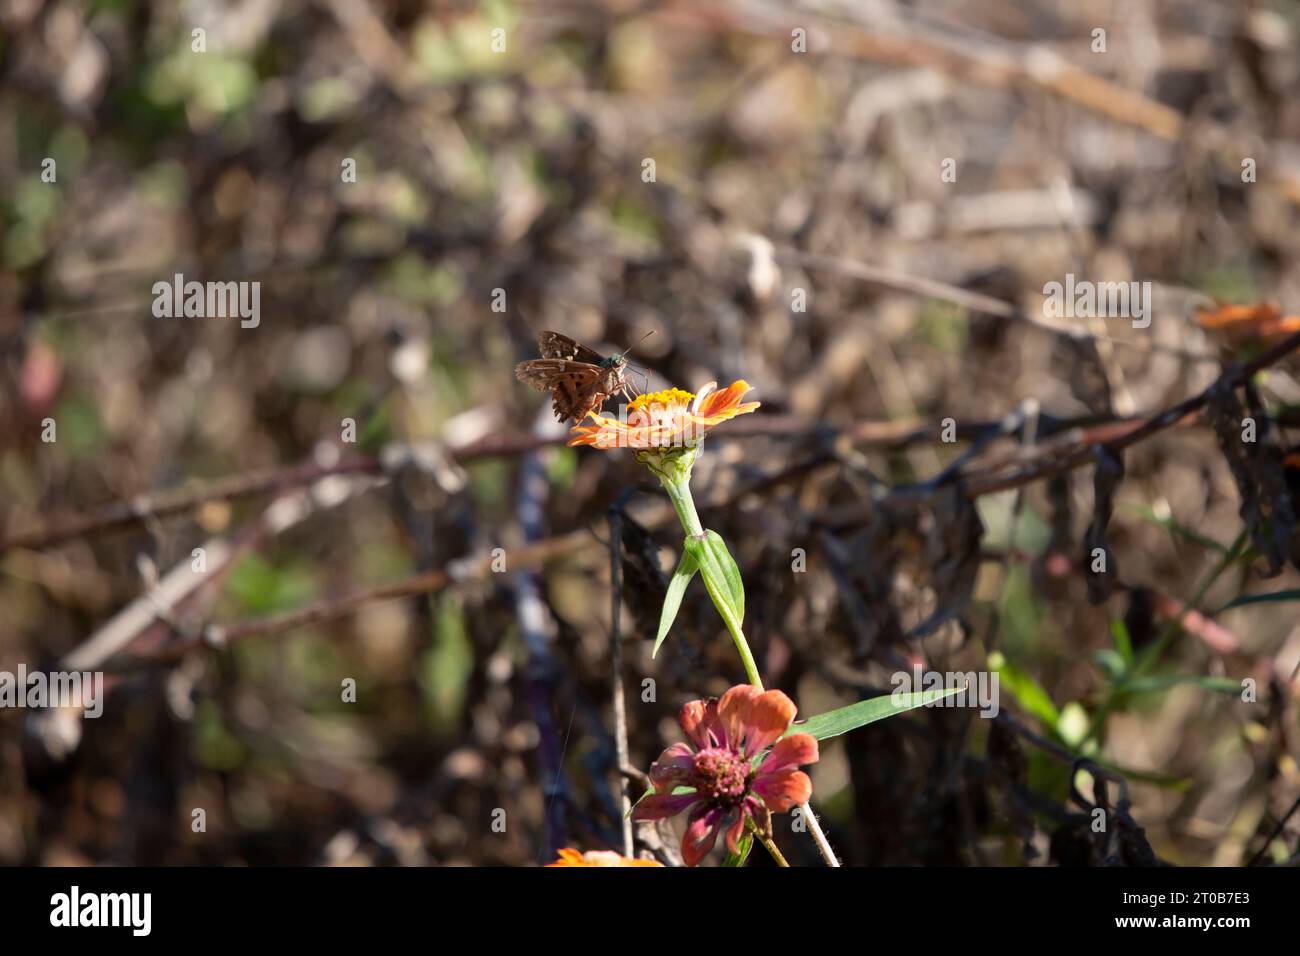 Skipper dalla coda lunga (Urbanus proteus) arroccato su un fiore di zinnia arancione Foto Stock